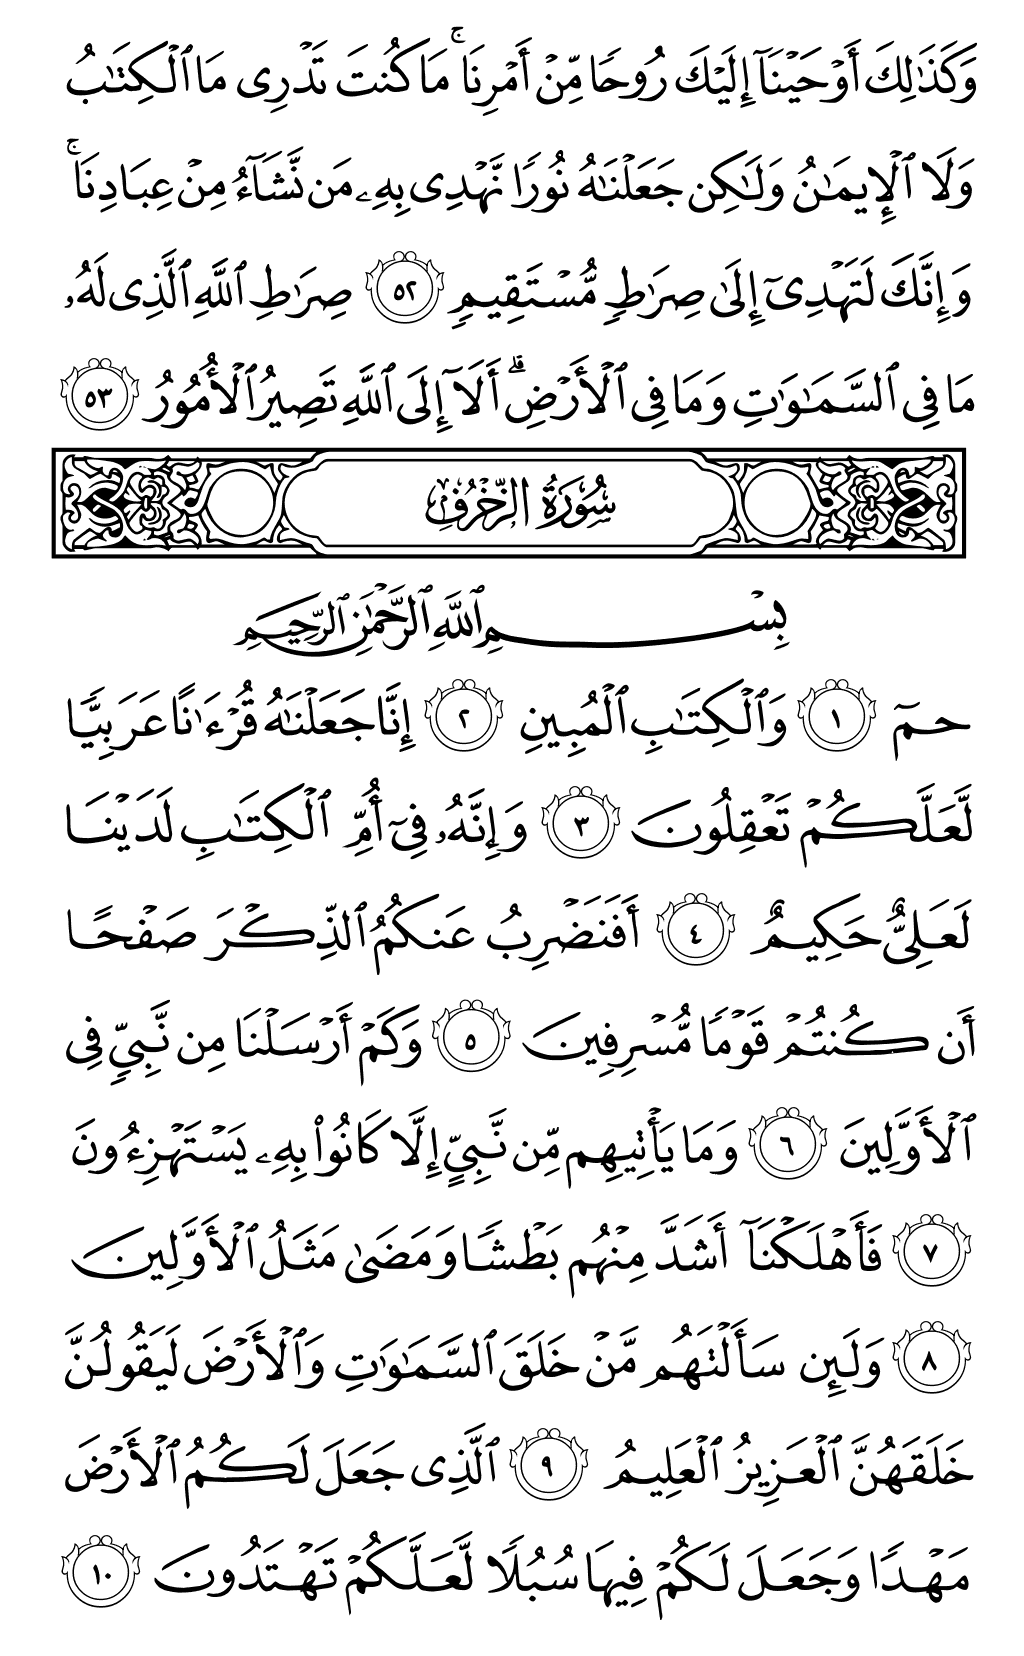 الصفحة رقم 489 من القرآن الكريم